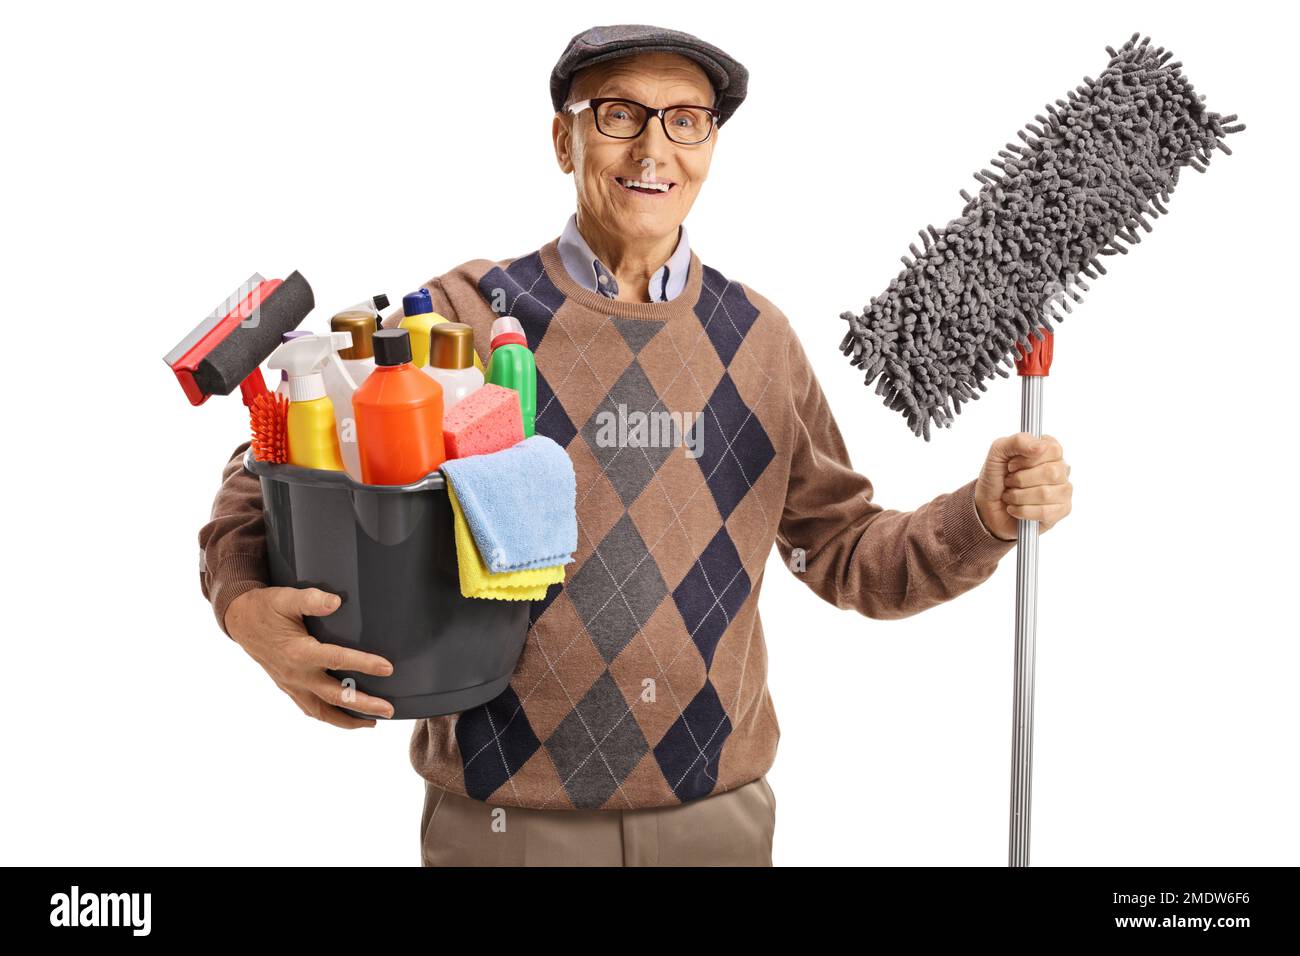 Uomo anziano che tiene un secchio con i rifornimenti di pulizia e un pavimento mop isolato su fondo bianco Foto Stock